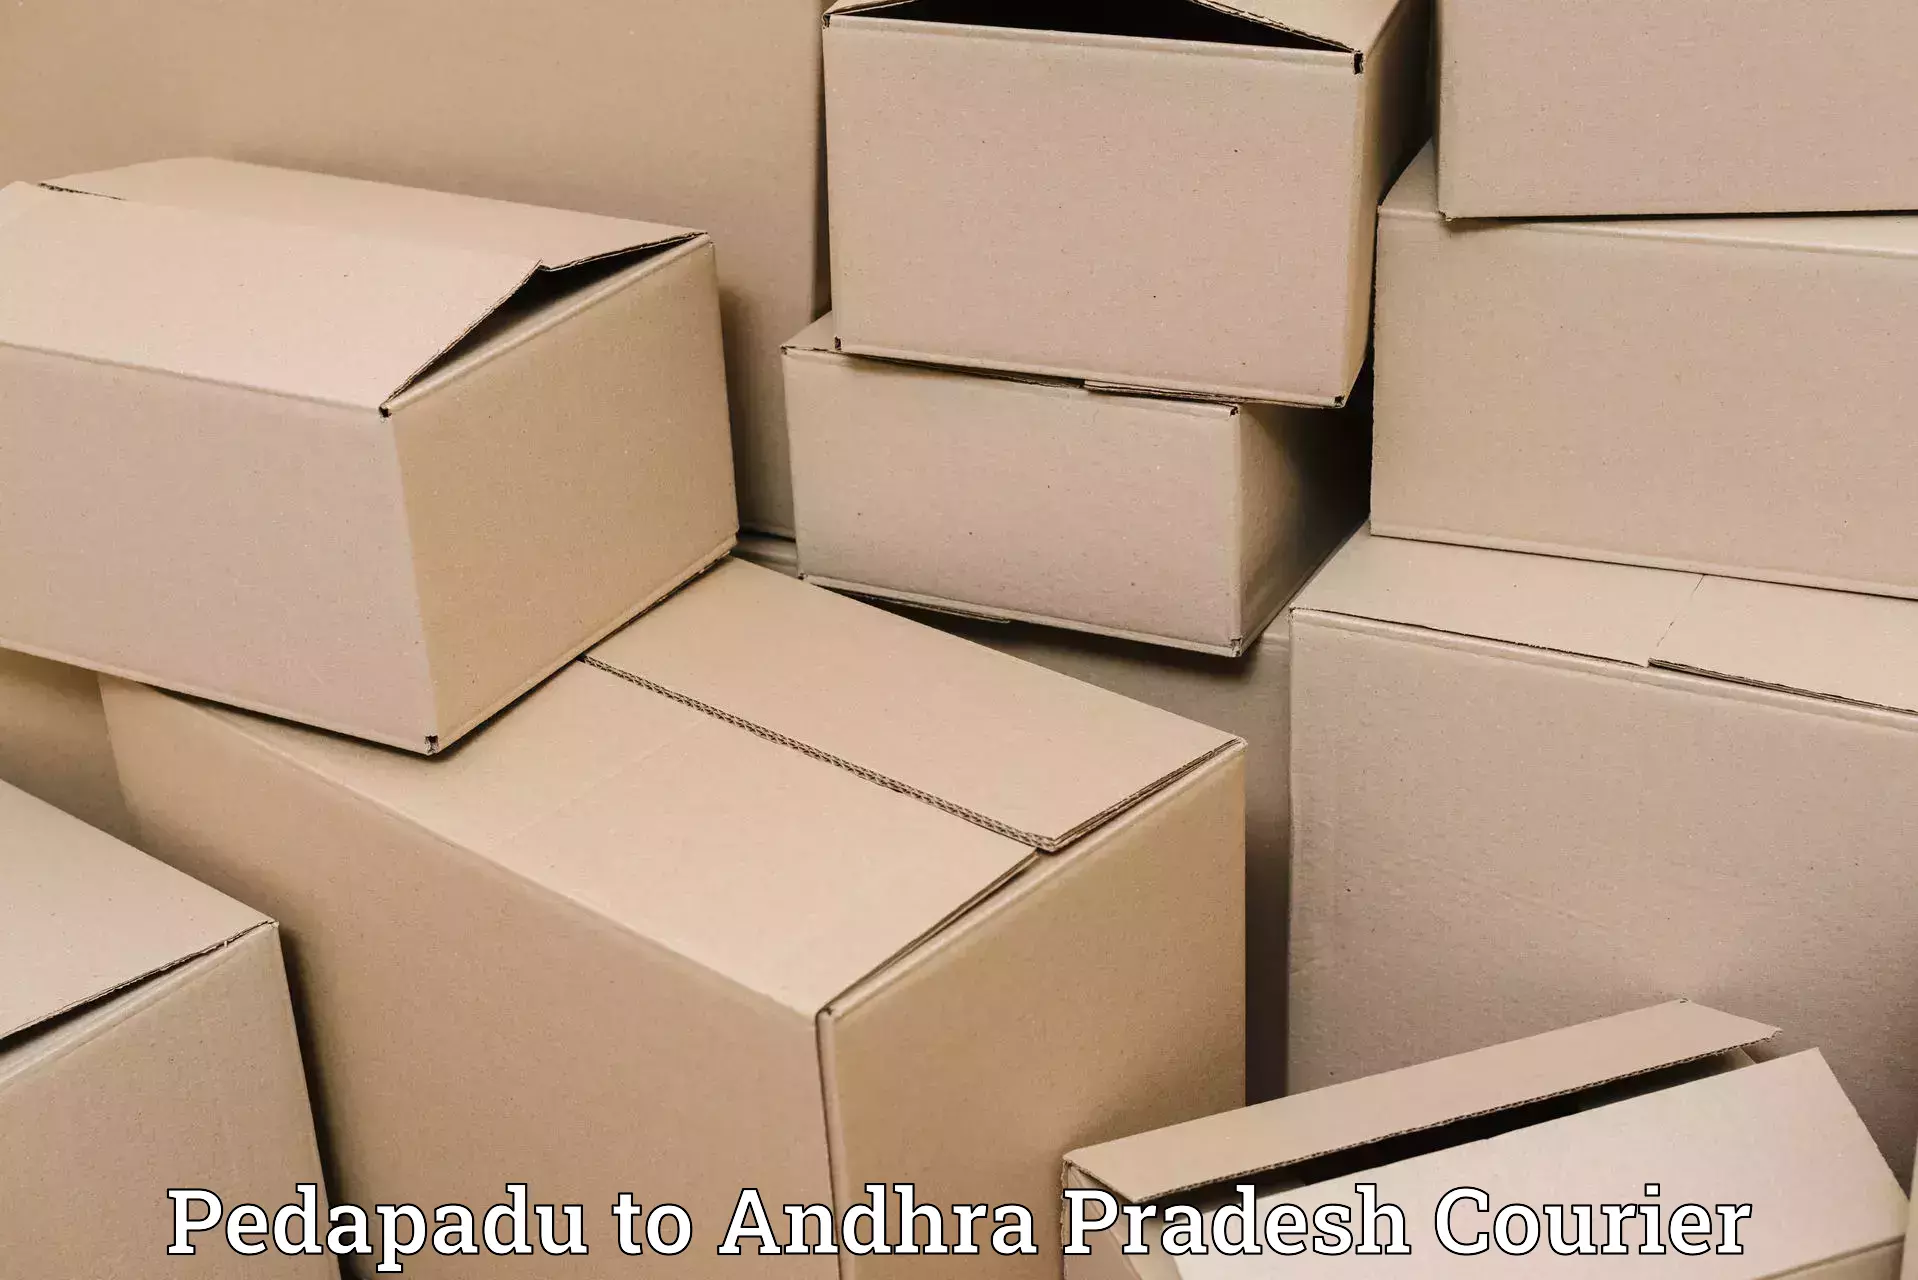 Expedited shipping methods Pedapadu to West Godavari